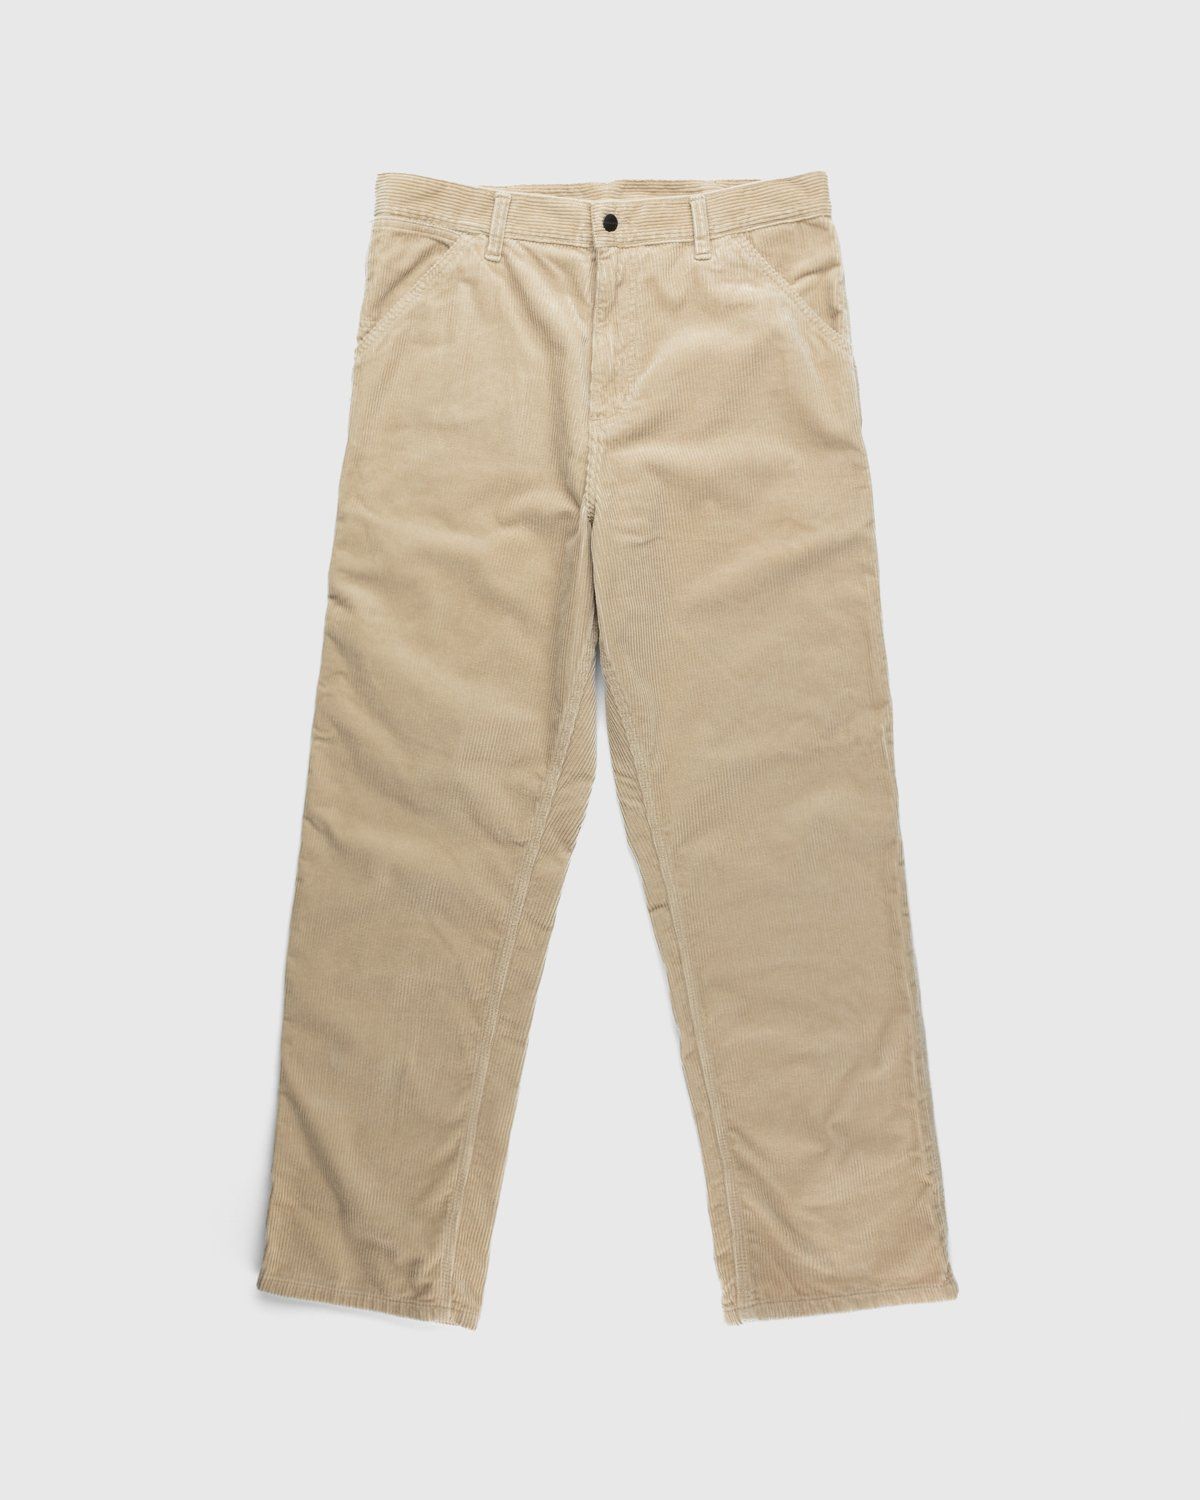 Carhartt WIP – Ruck Single Knee Pant Beige - Trousers - Brown - Image 1